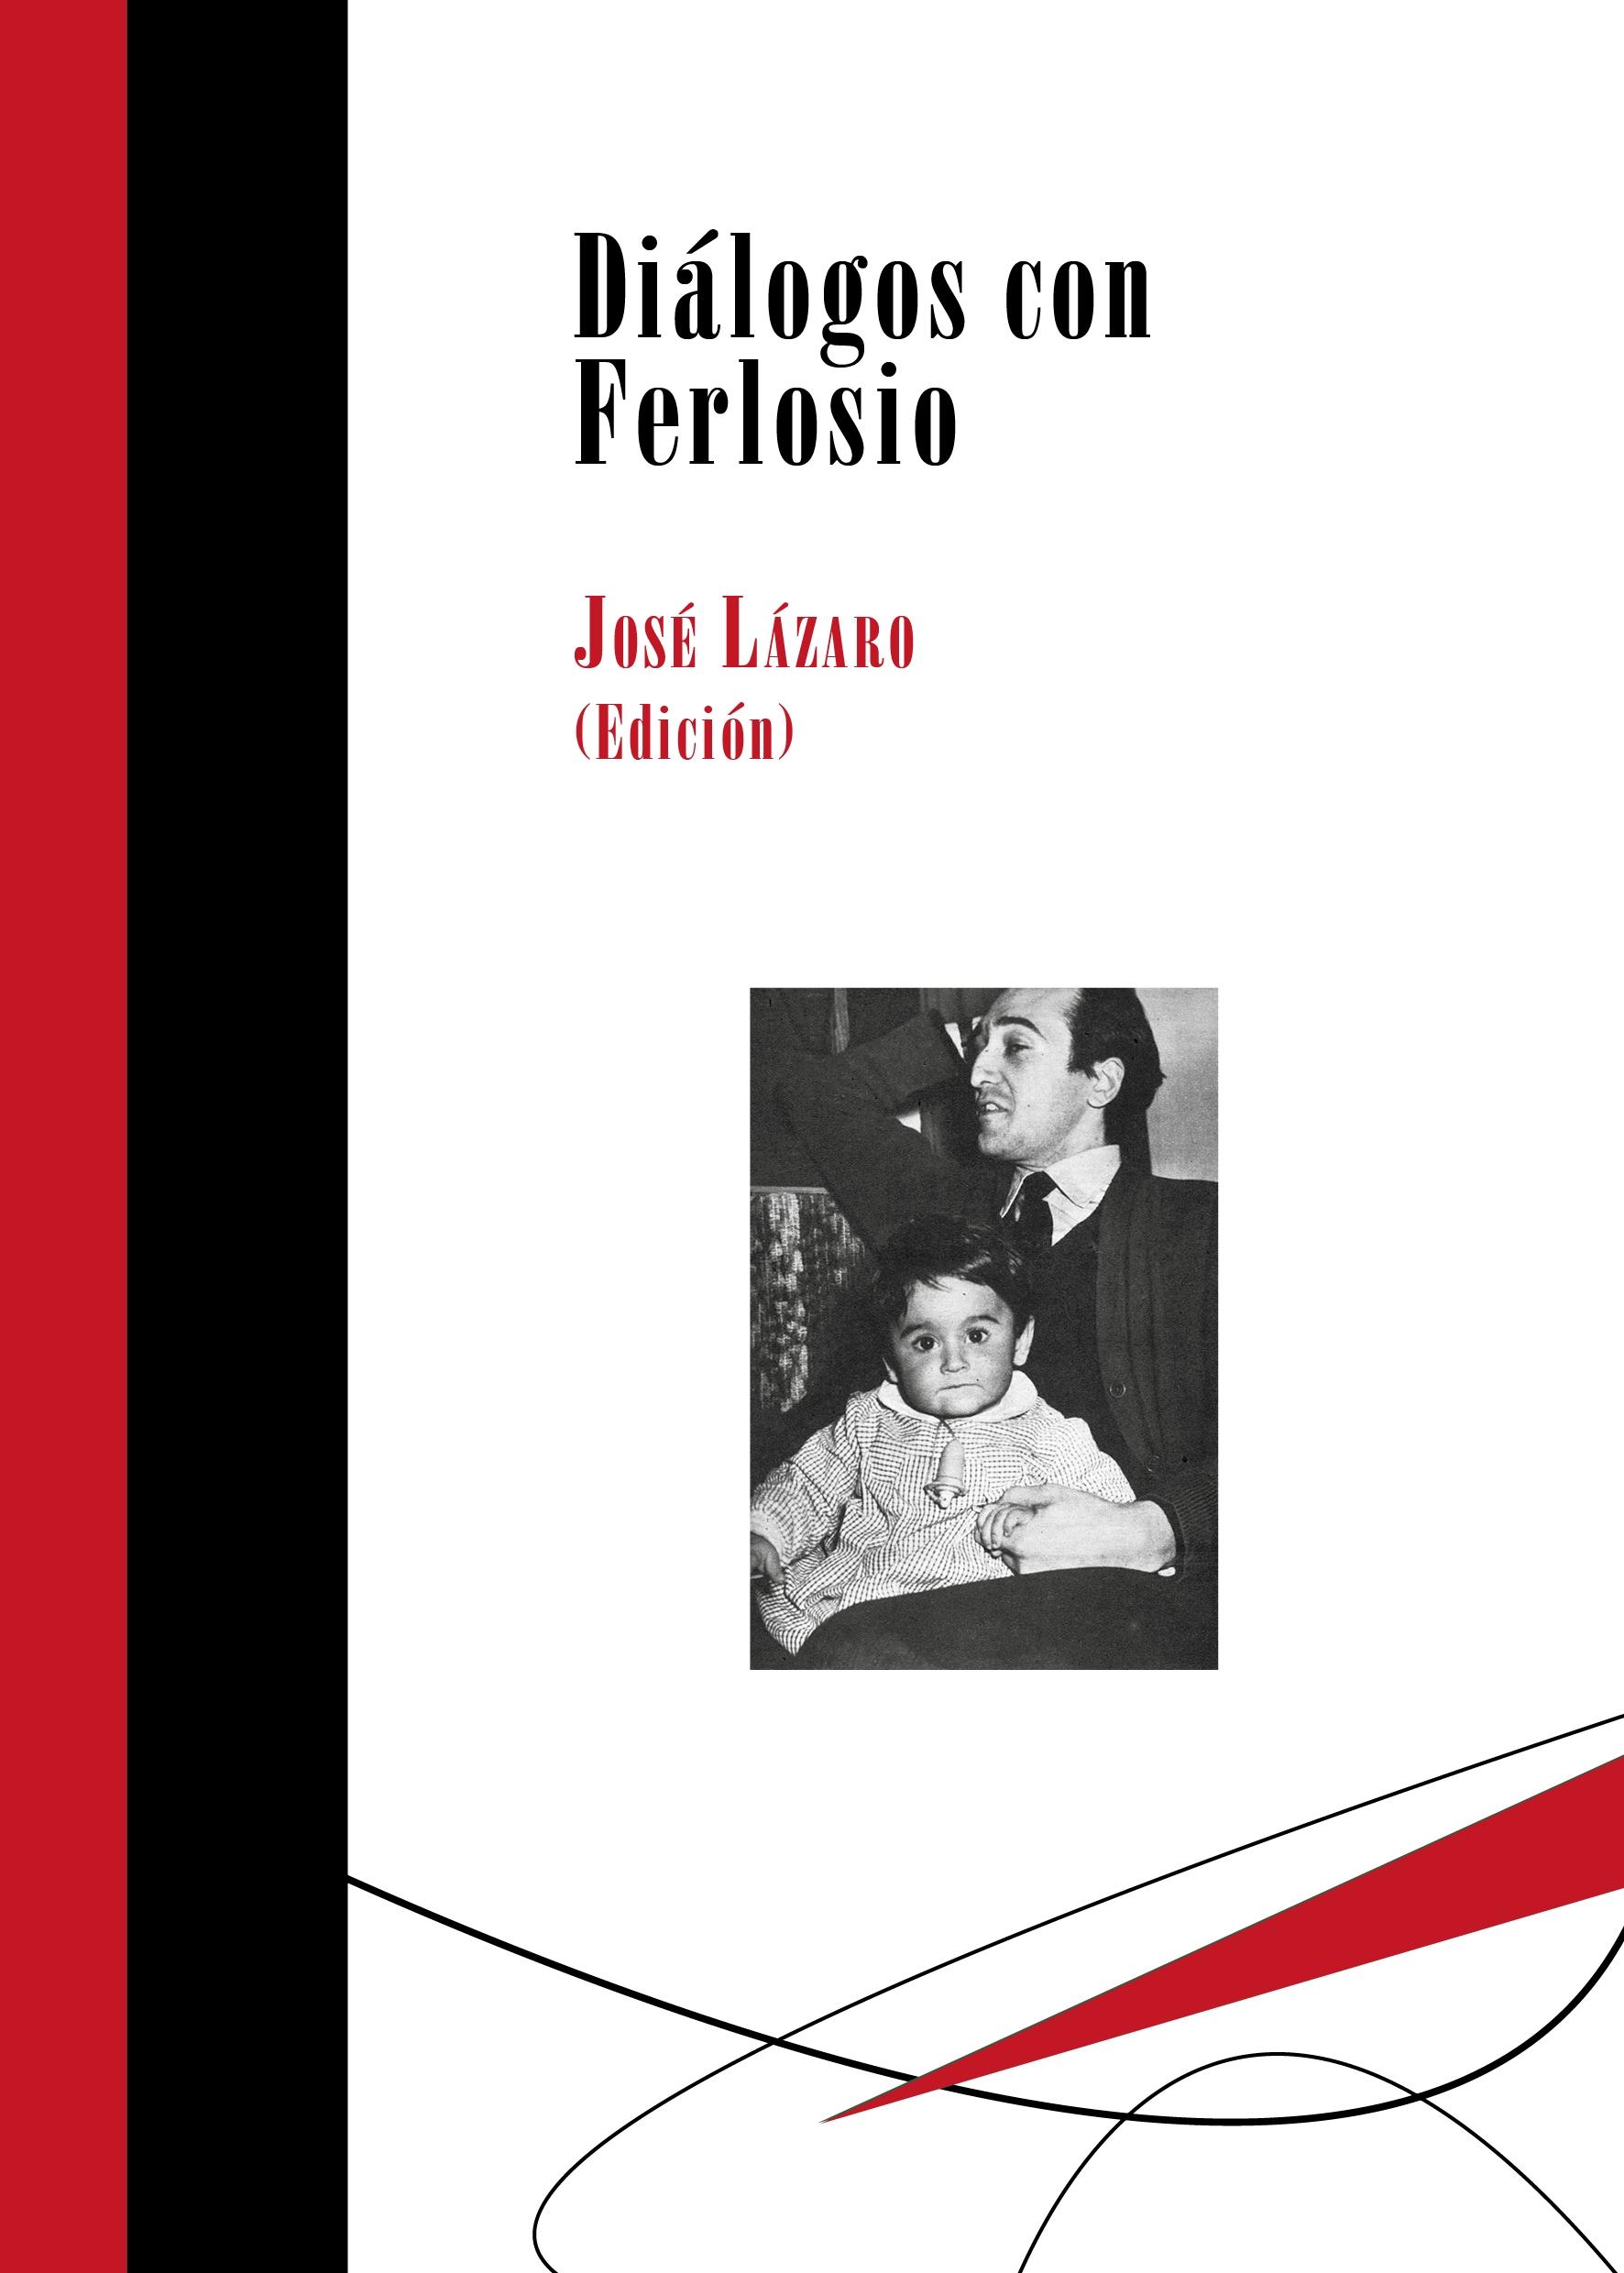 Diálogos con Ferlosio "Edición de José Lázaro". 